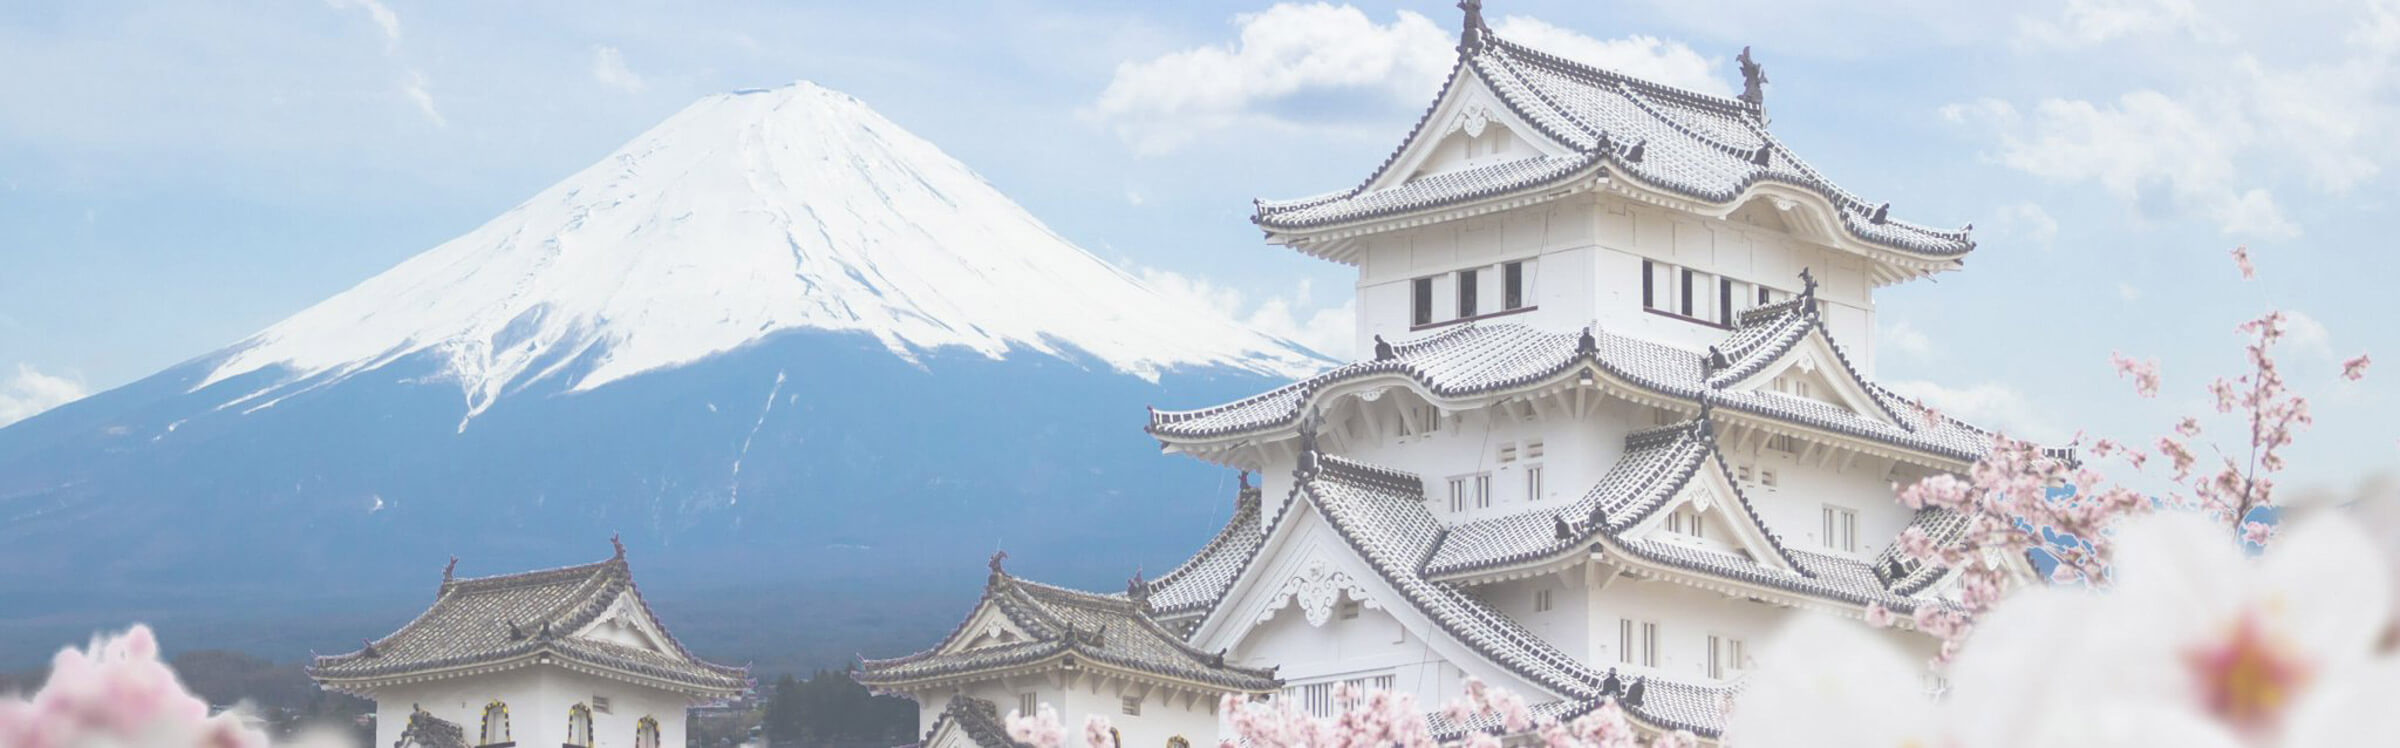 เที่ยวญี่ปุ่นด้วยกัน! – OhHotrip.com